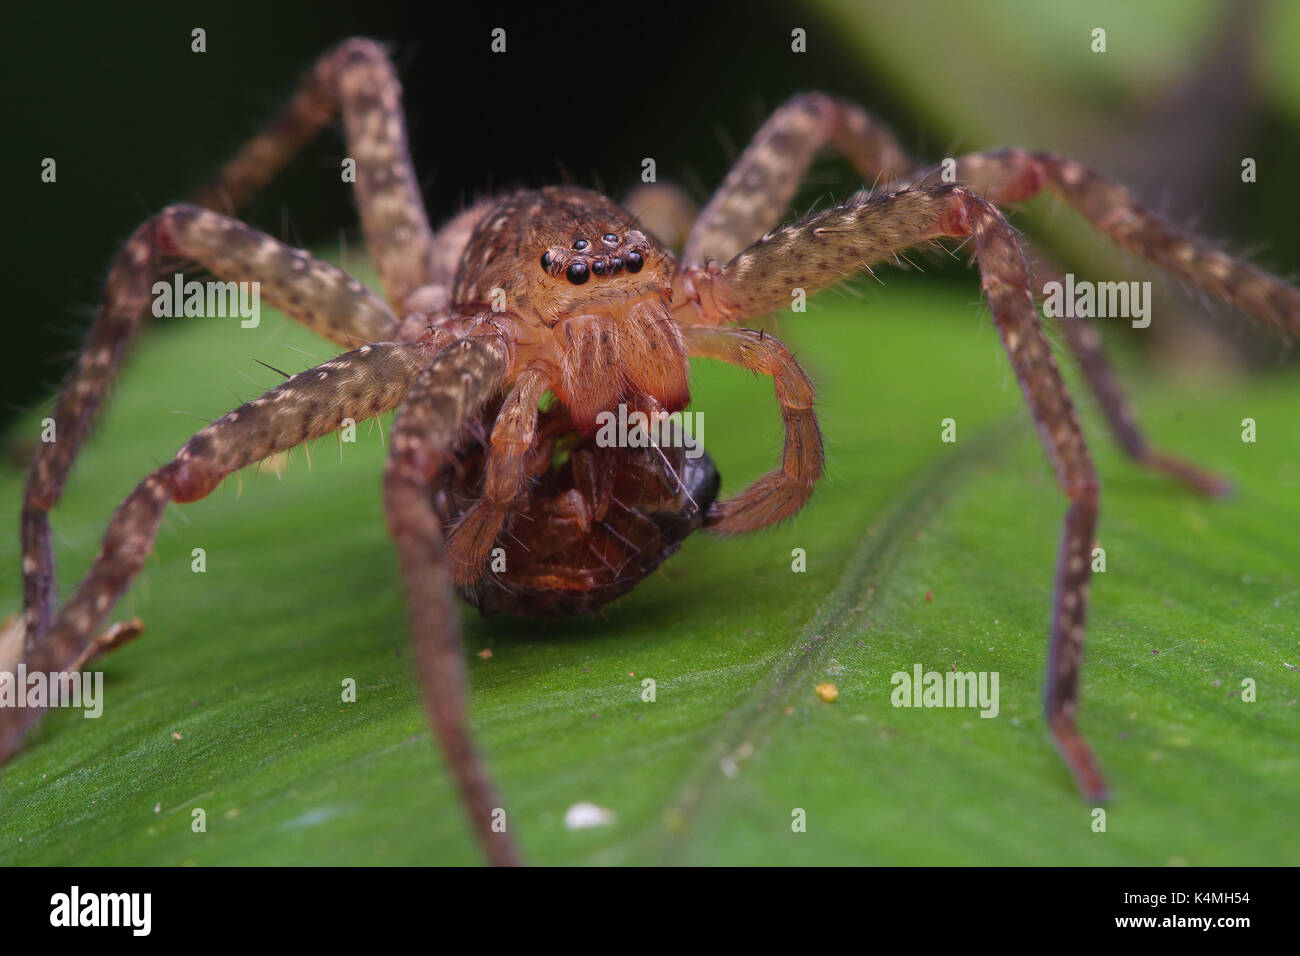 Huntsman spider (Heteropoda sp) Stock Photo